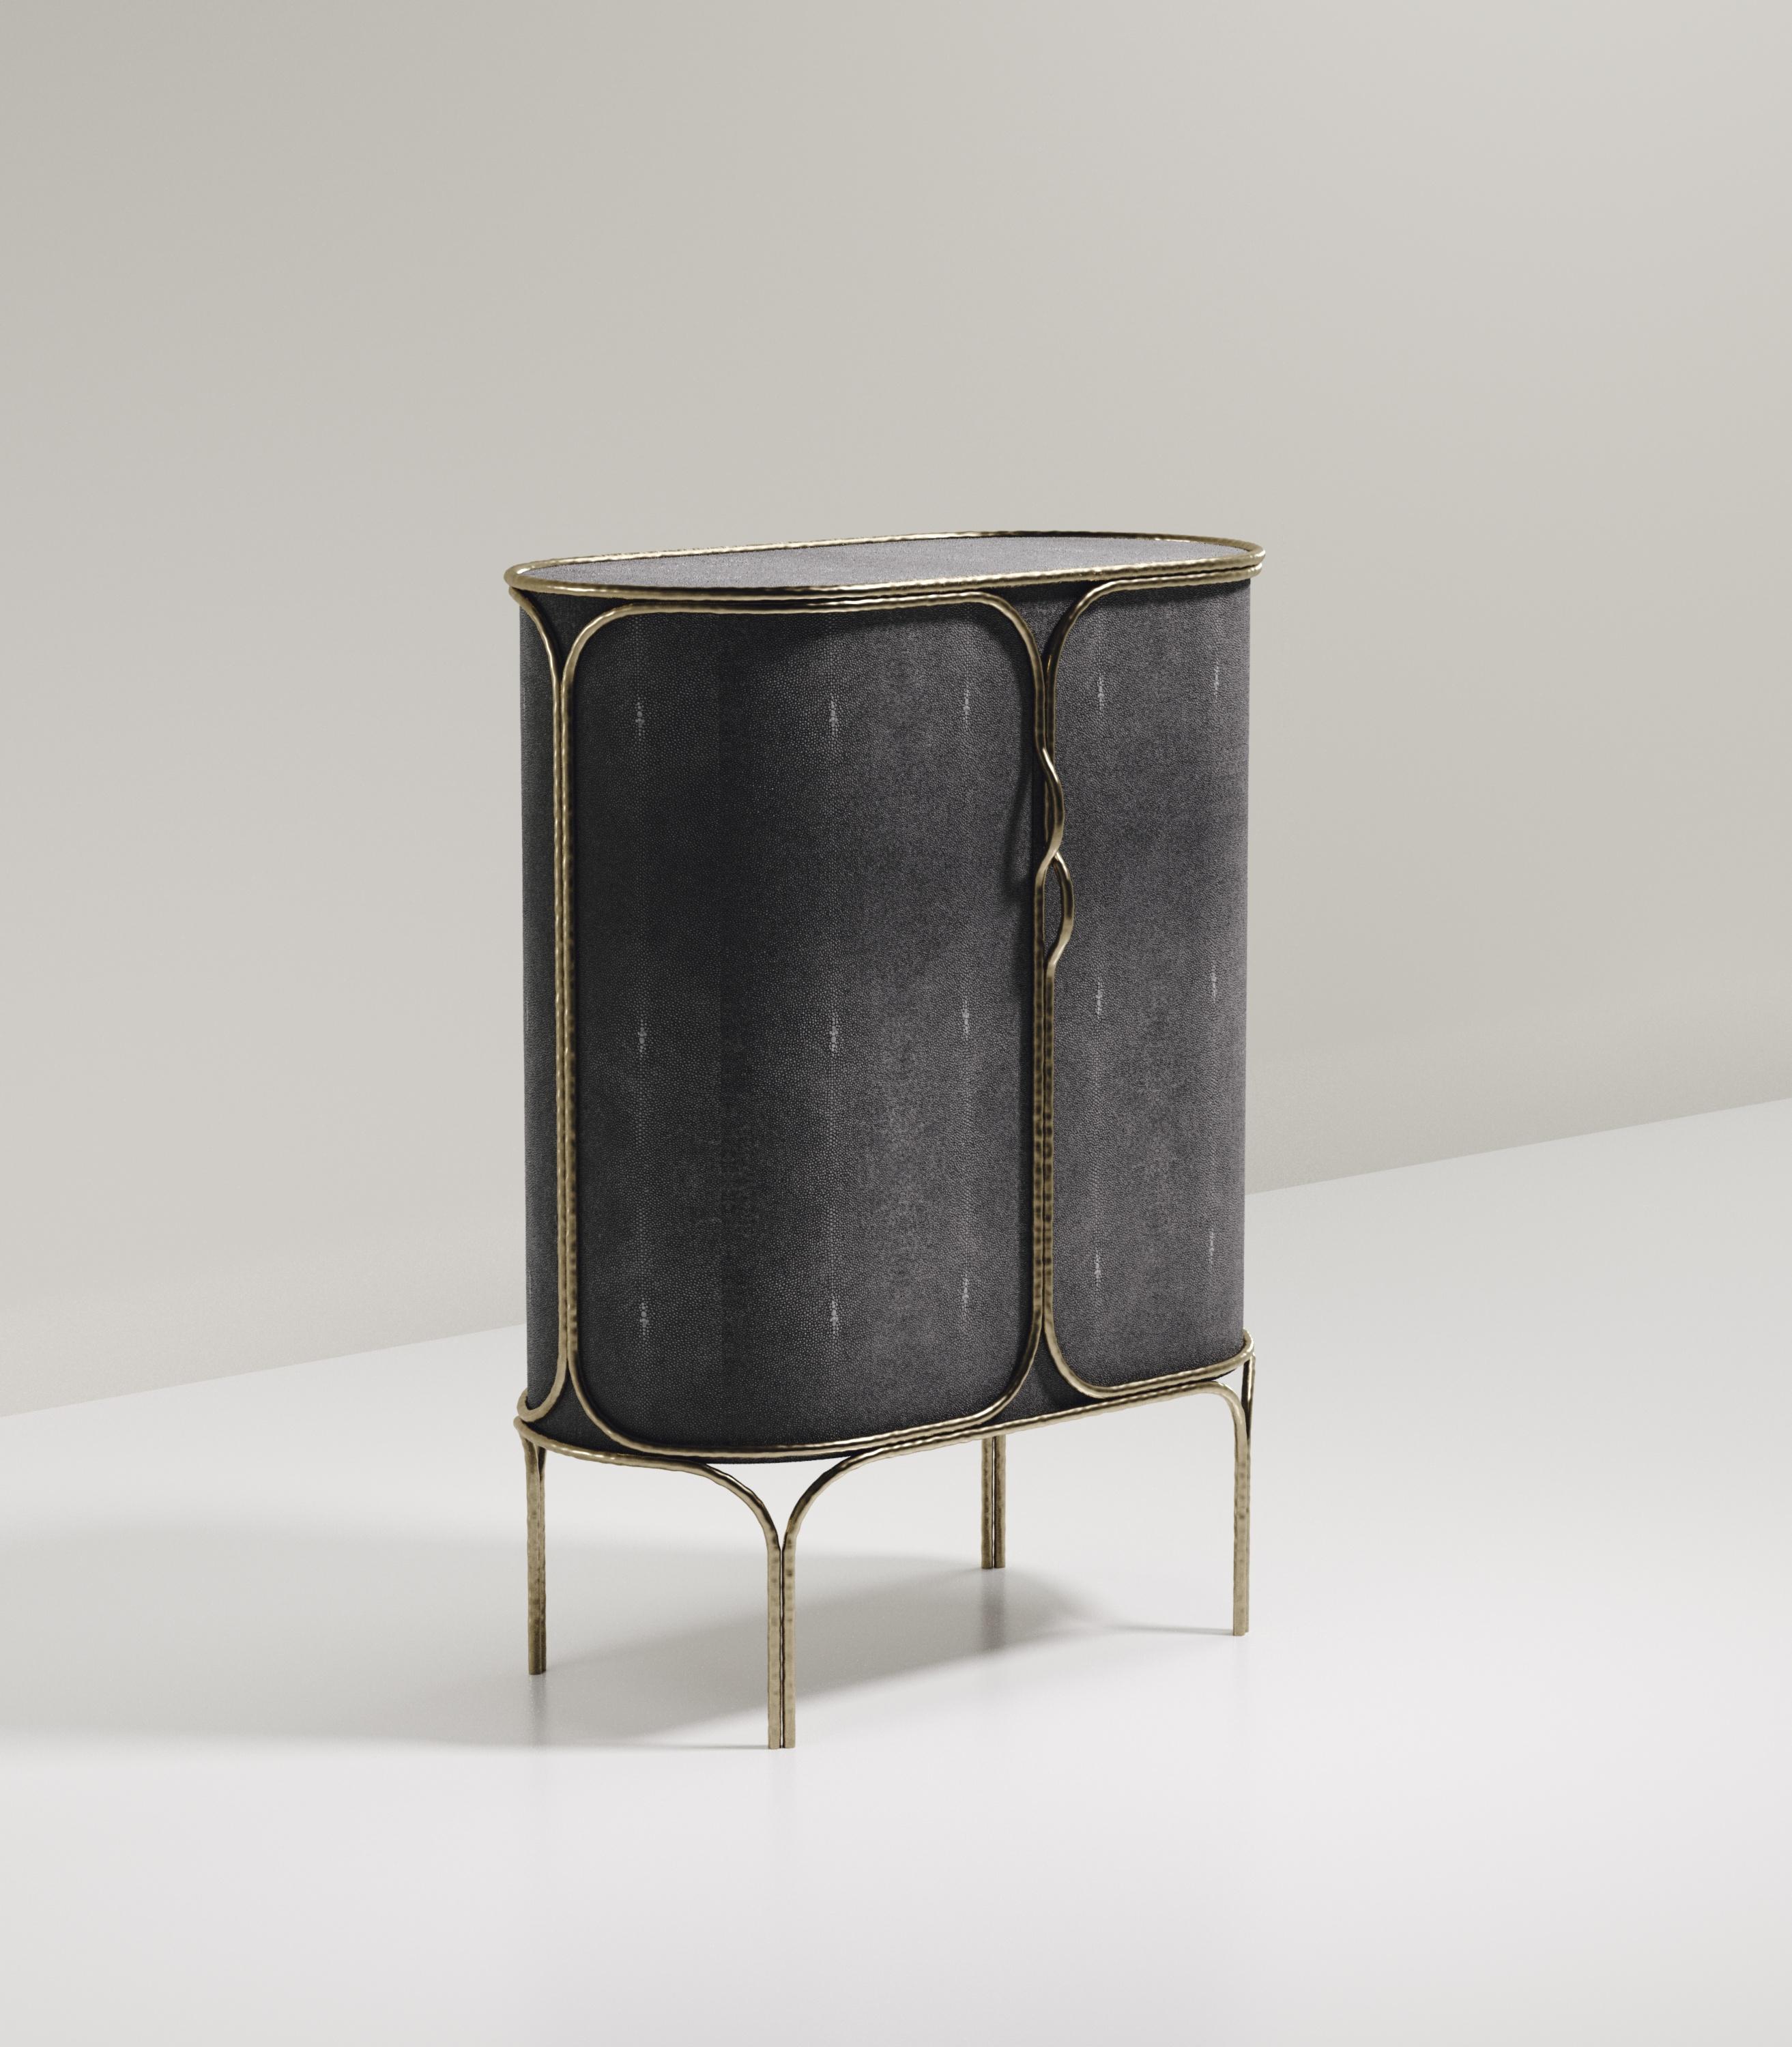 Le meuble bar Arianne de R&Y Augousti est une pièce unique. L'ensemble de la pièce est incrusté de galuchat noir de charbon, accentué par des détails complexes en laiton bronze-patine qui ont l'effet 